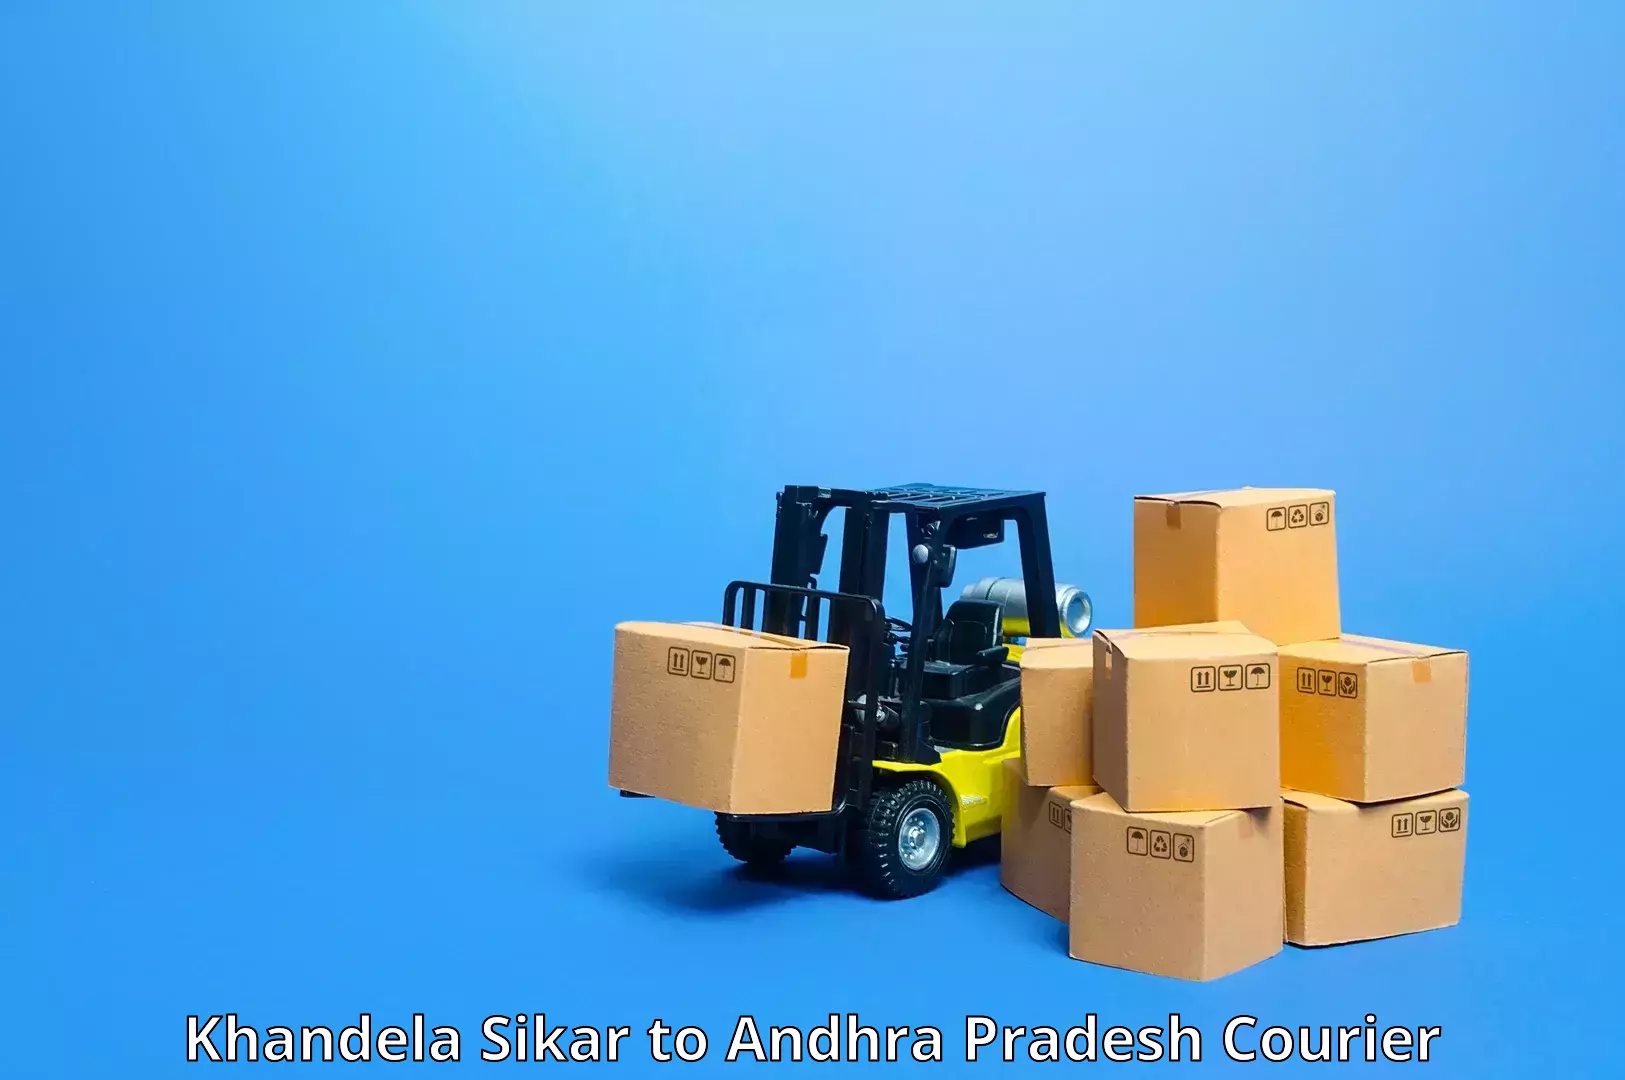 Round-the-clock parcel delivery Khandela Sikar to Gorantla